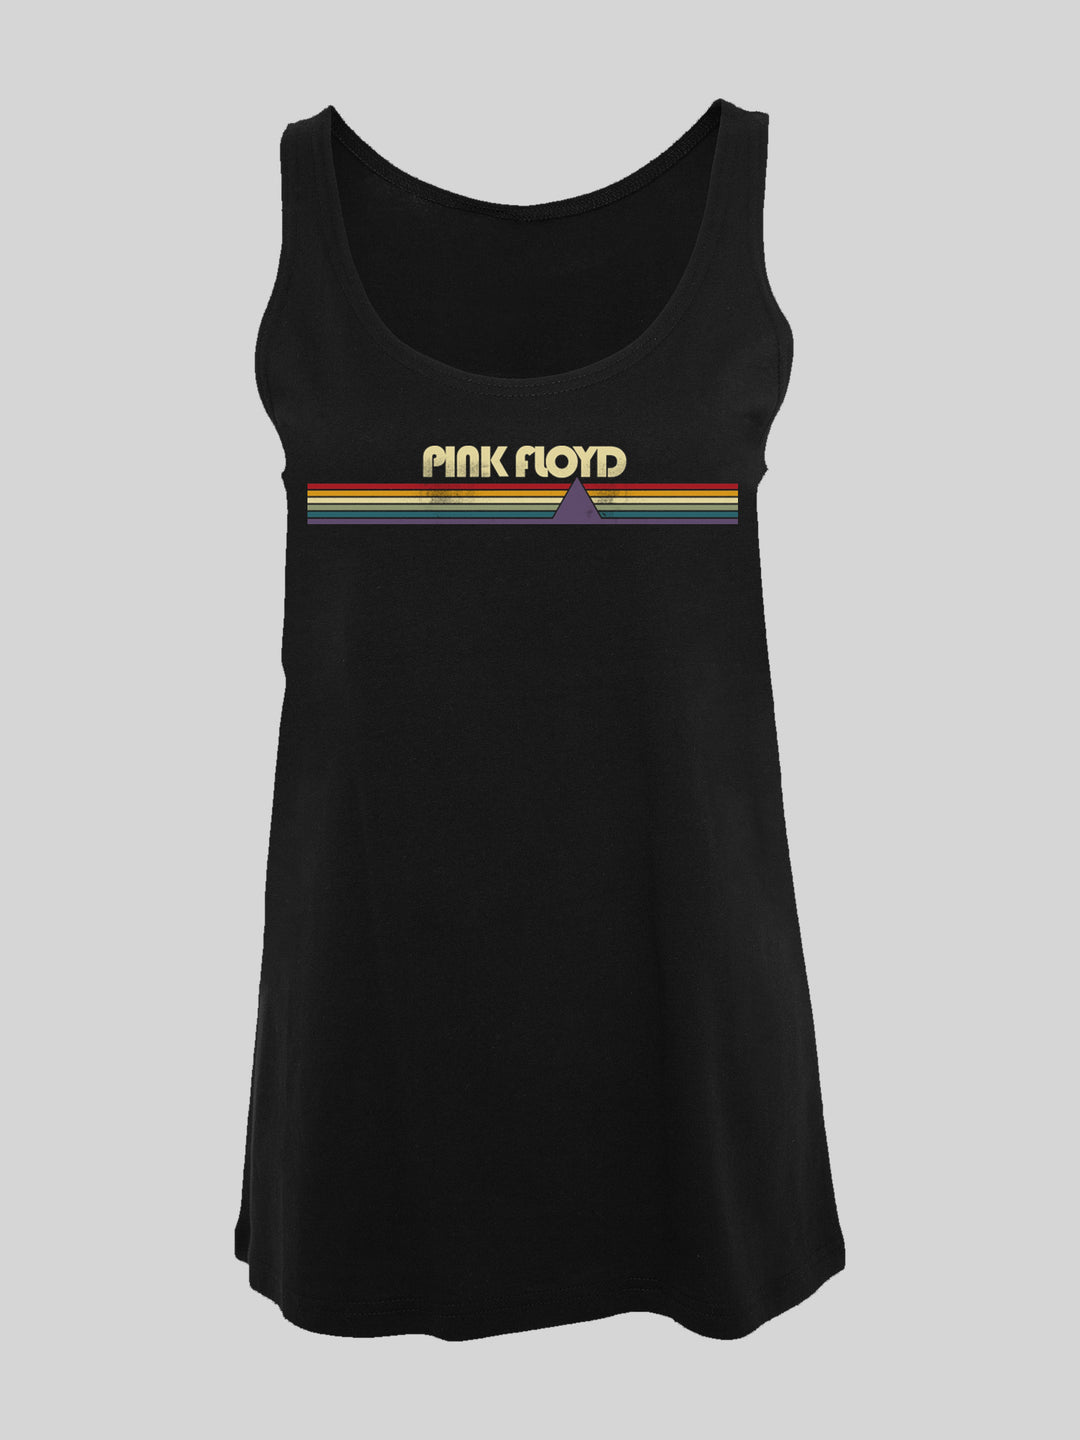 Pink Floyd Prism Retro Stripes with Ladies Tanktop